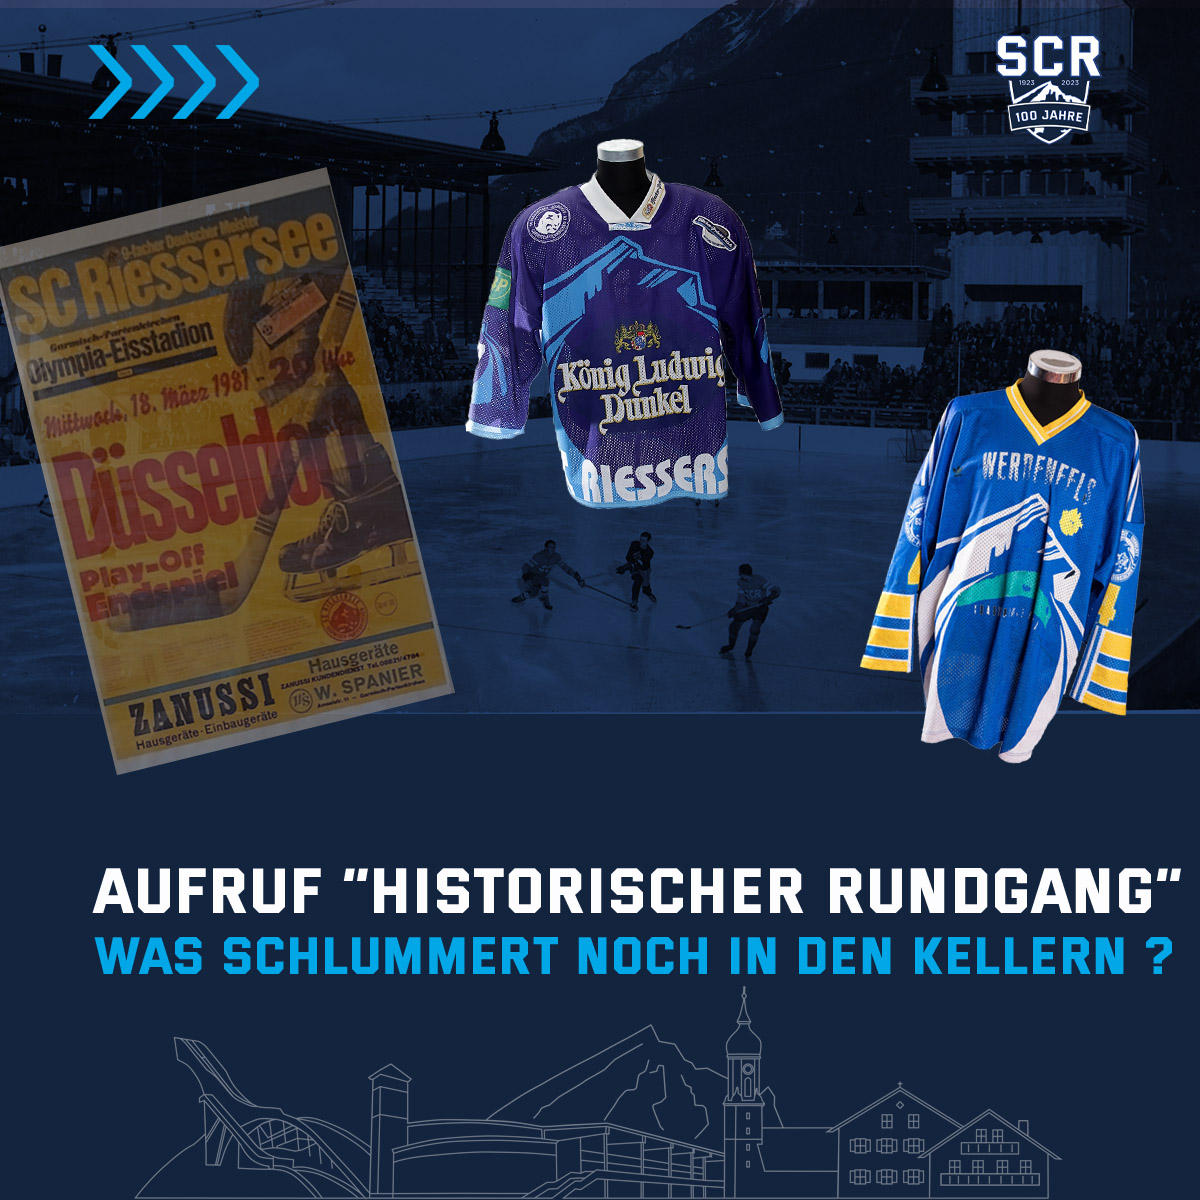     Aufruf an alle Fans und Freunde des SC Riessersee, Sammler und Hobby-Historiker!